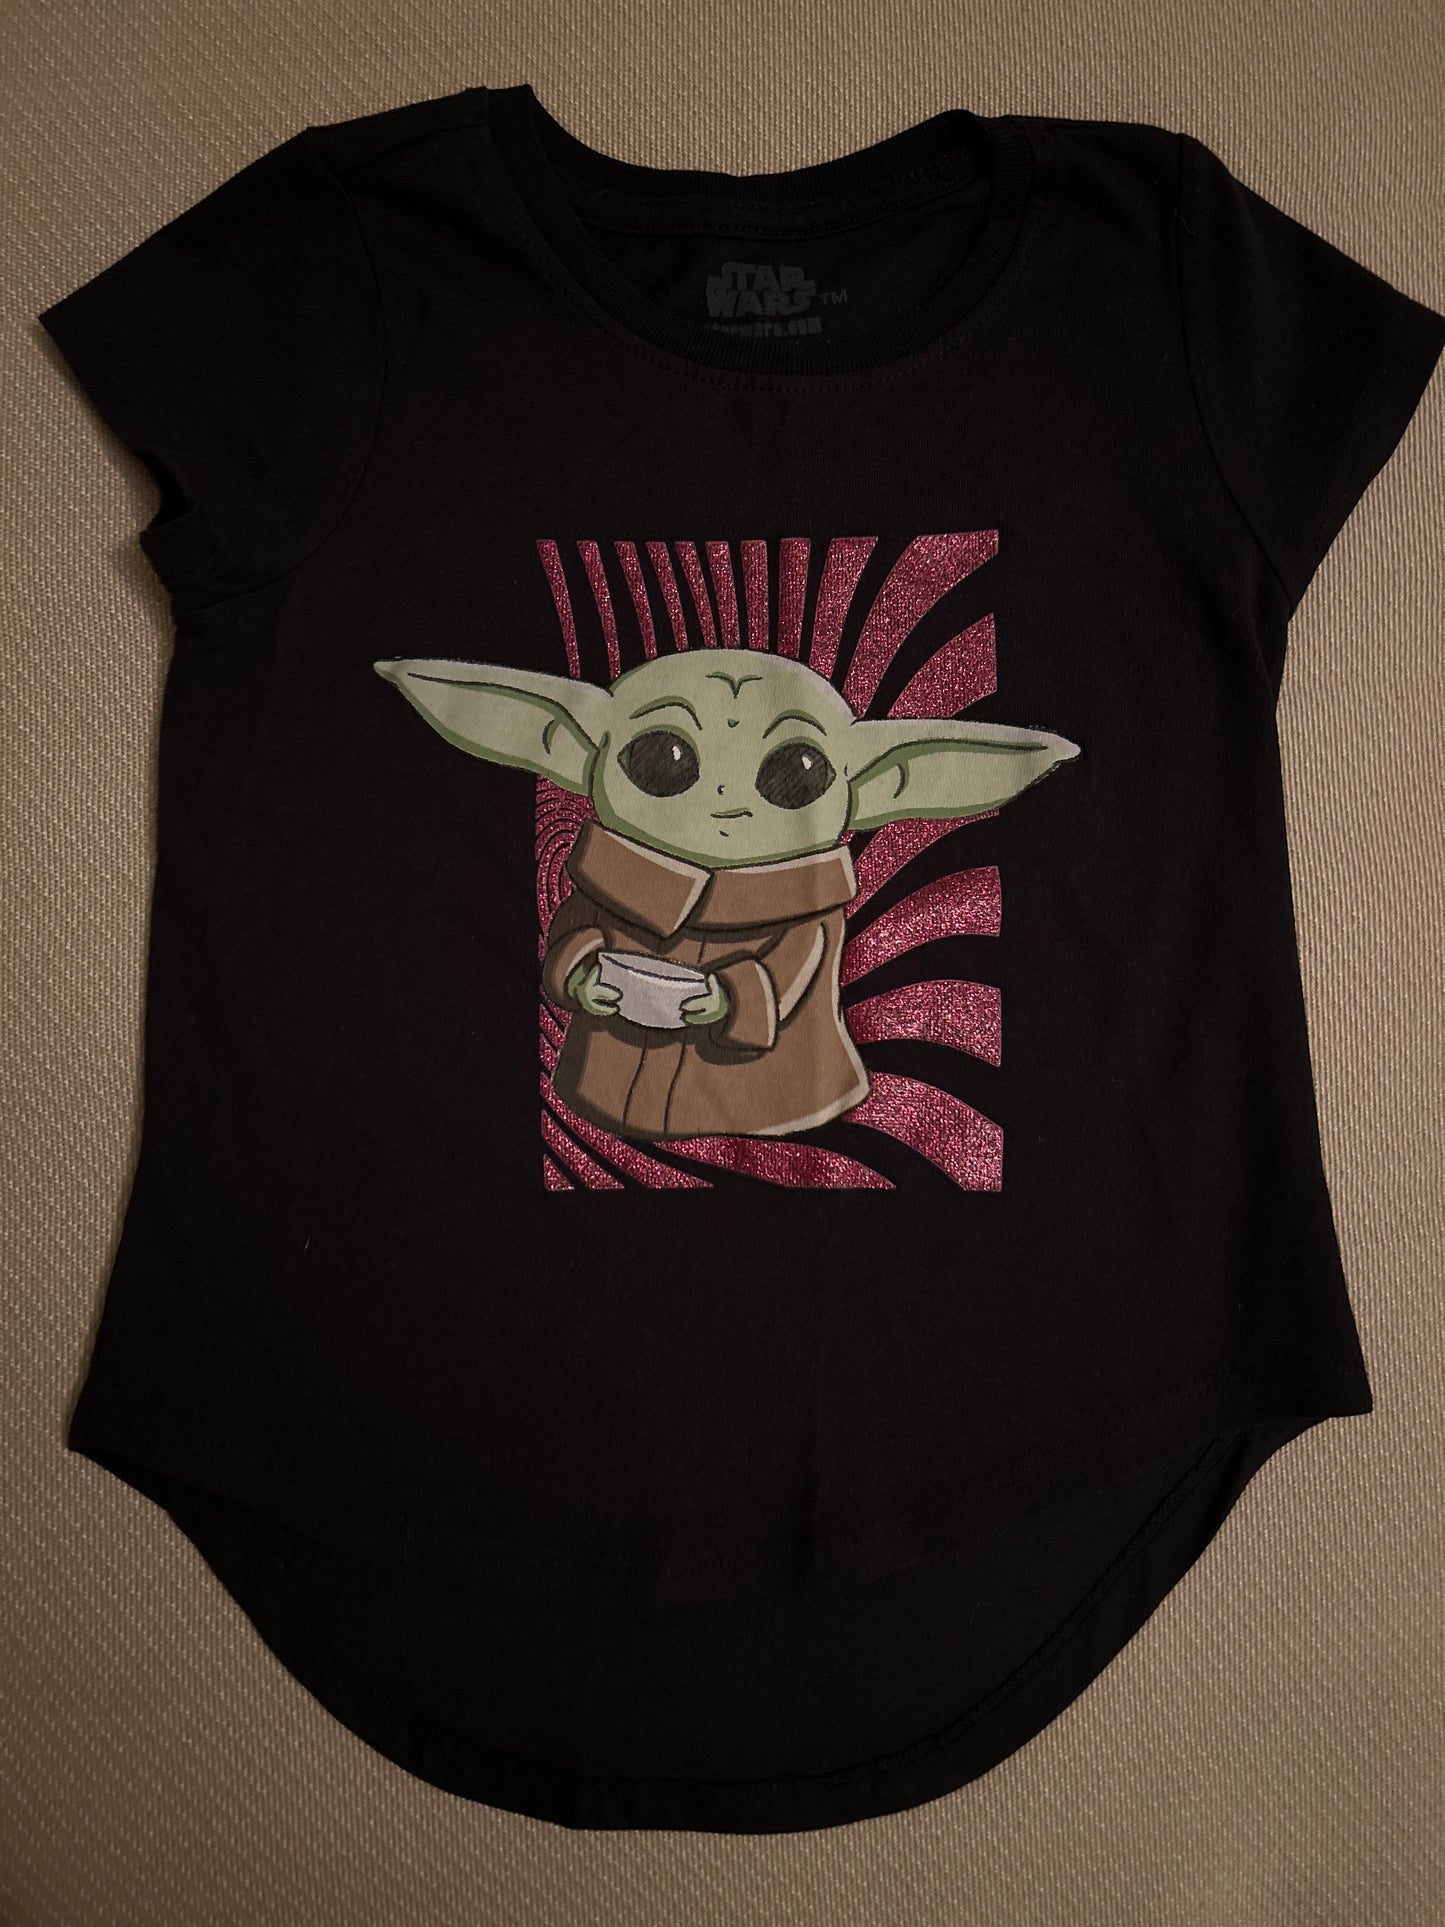 Star Wars Girls Baby Yoda tee/Size 6